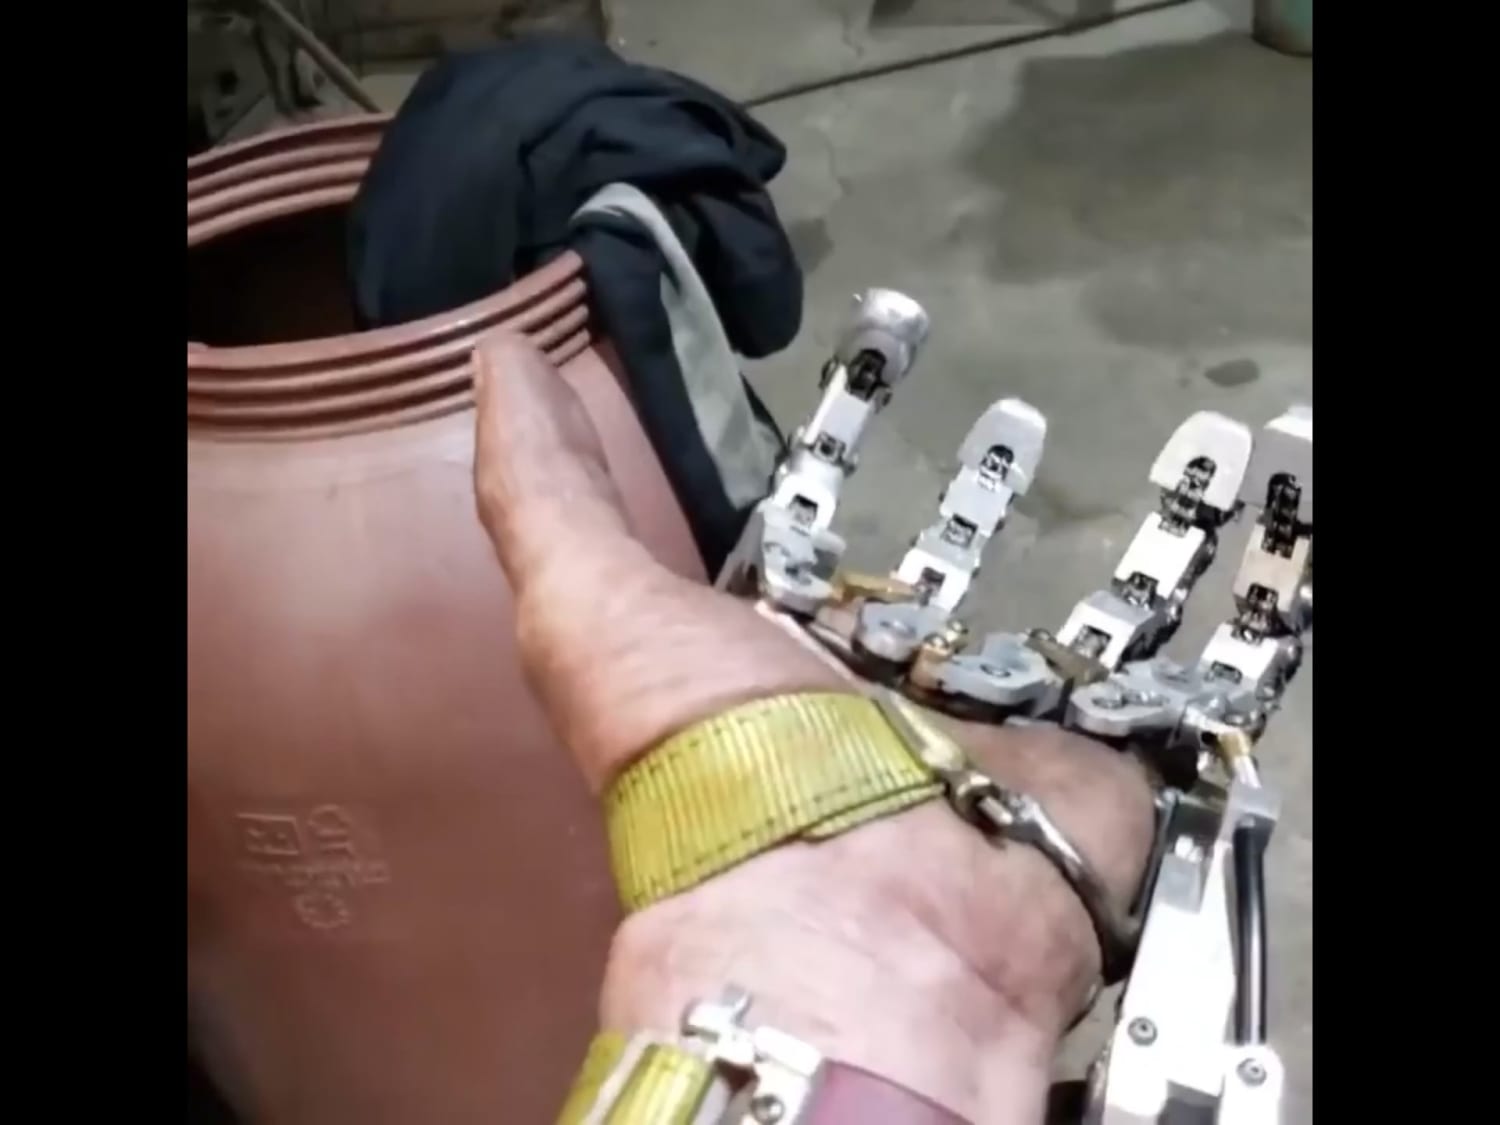 This finger prosthetic